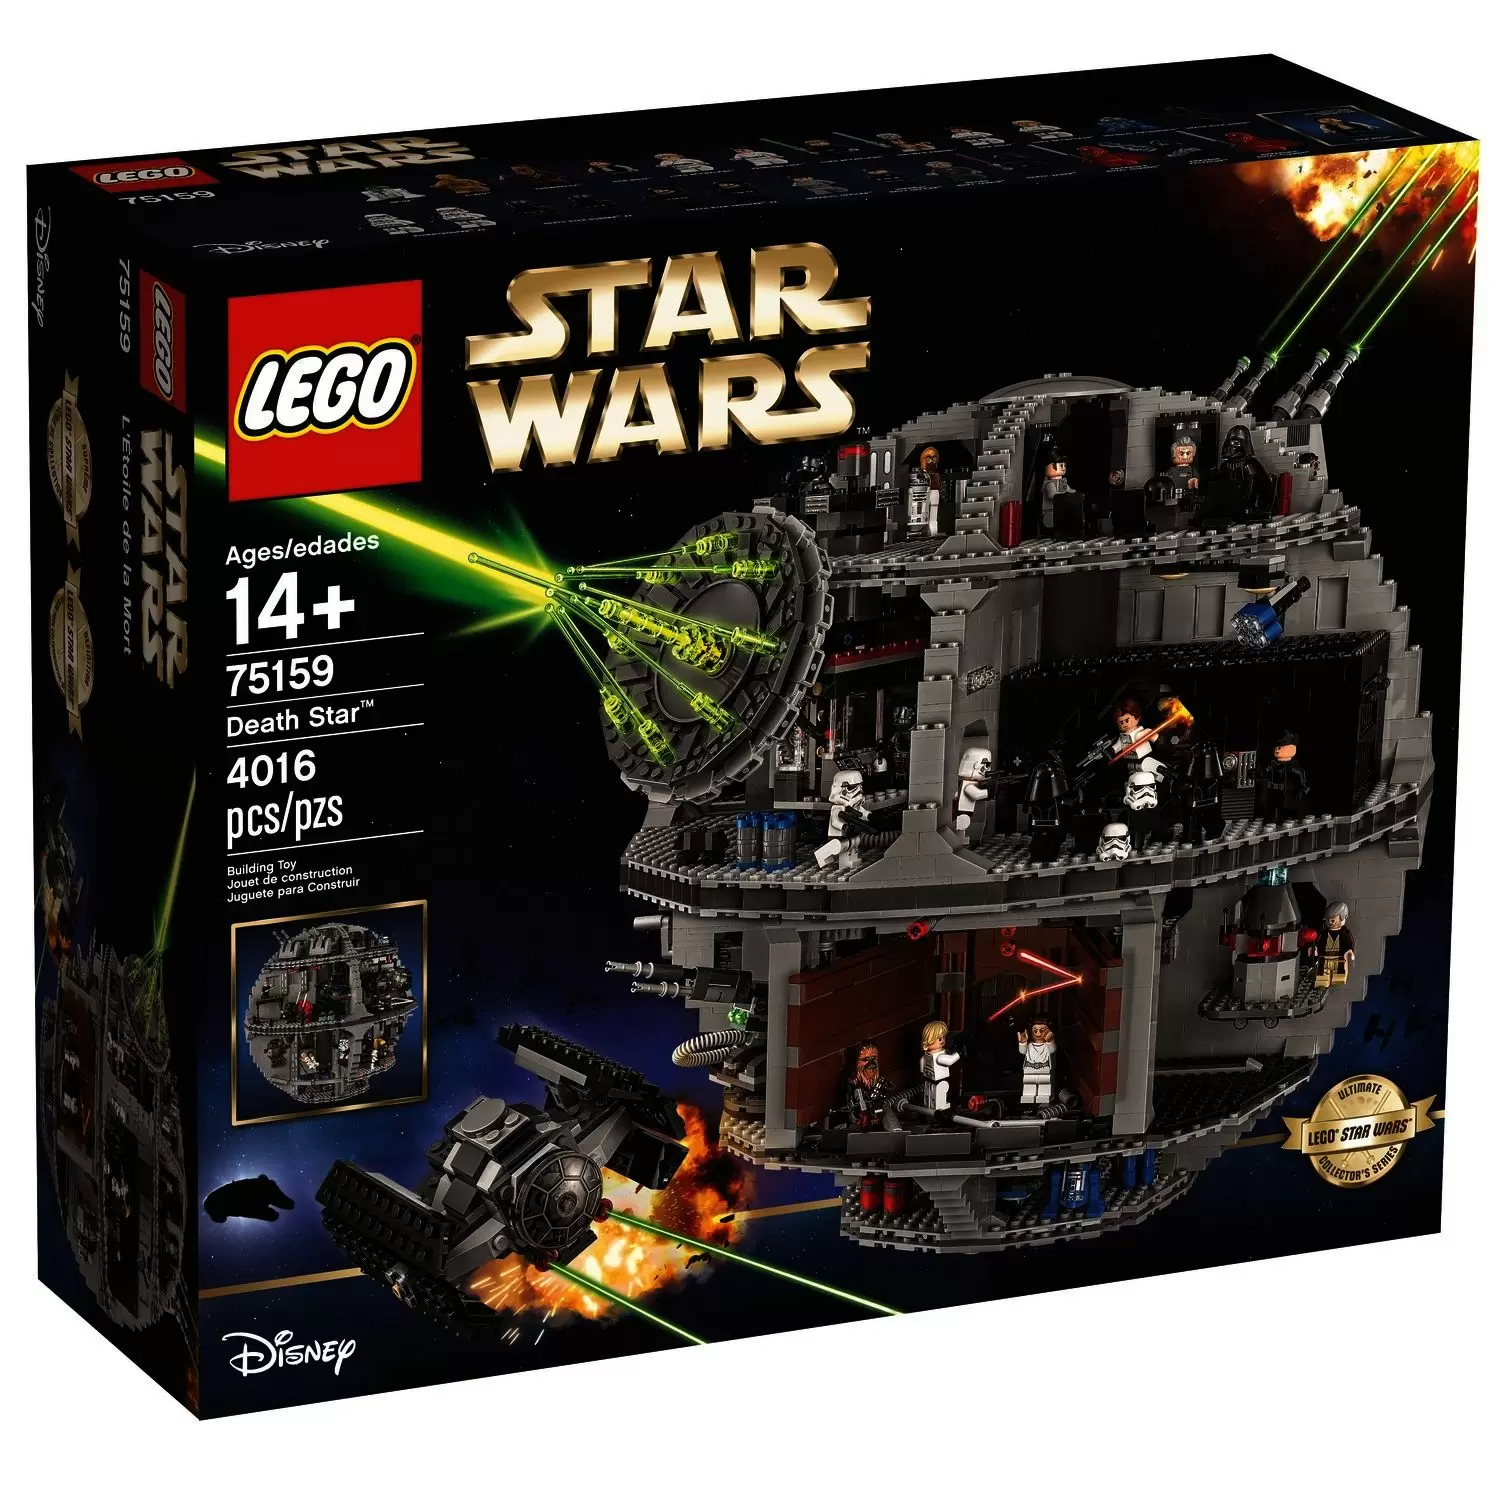 Flyve drage generøsitet Jolly The Death Star (Ultimate Collector's Series) - LEGO Star Wars set 75159